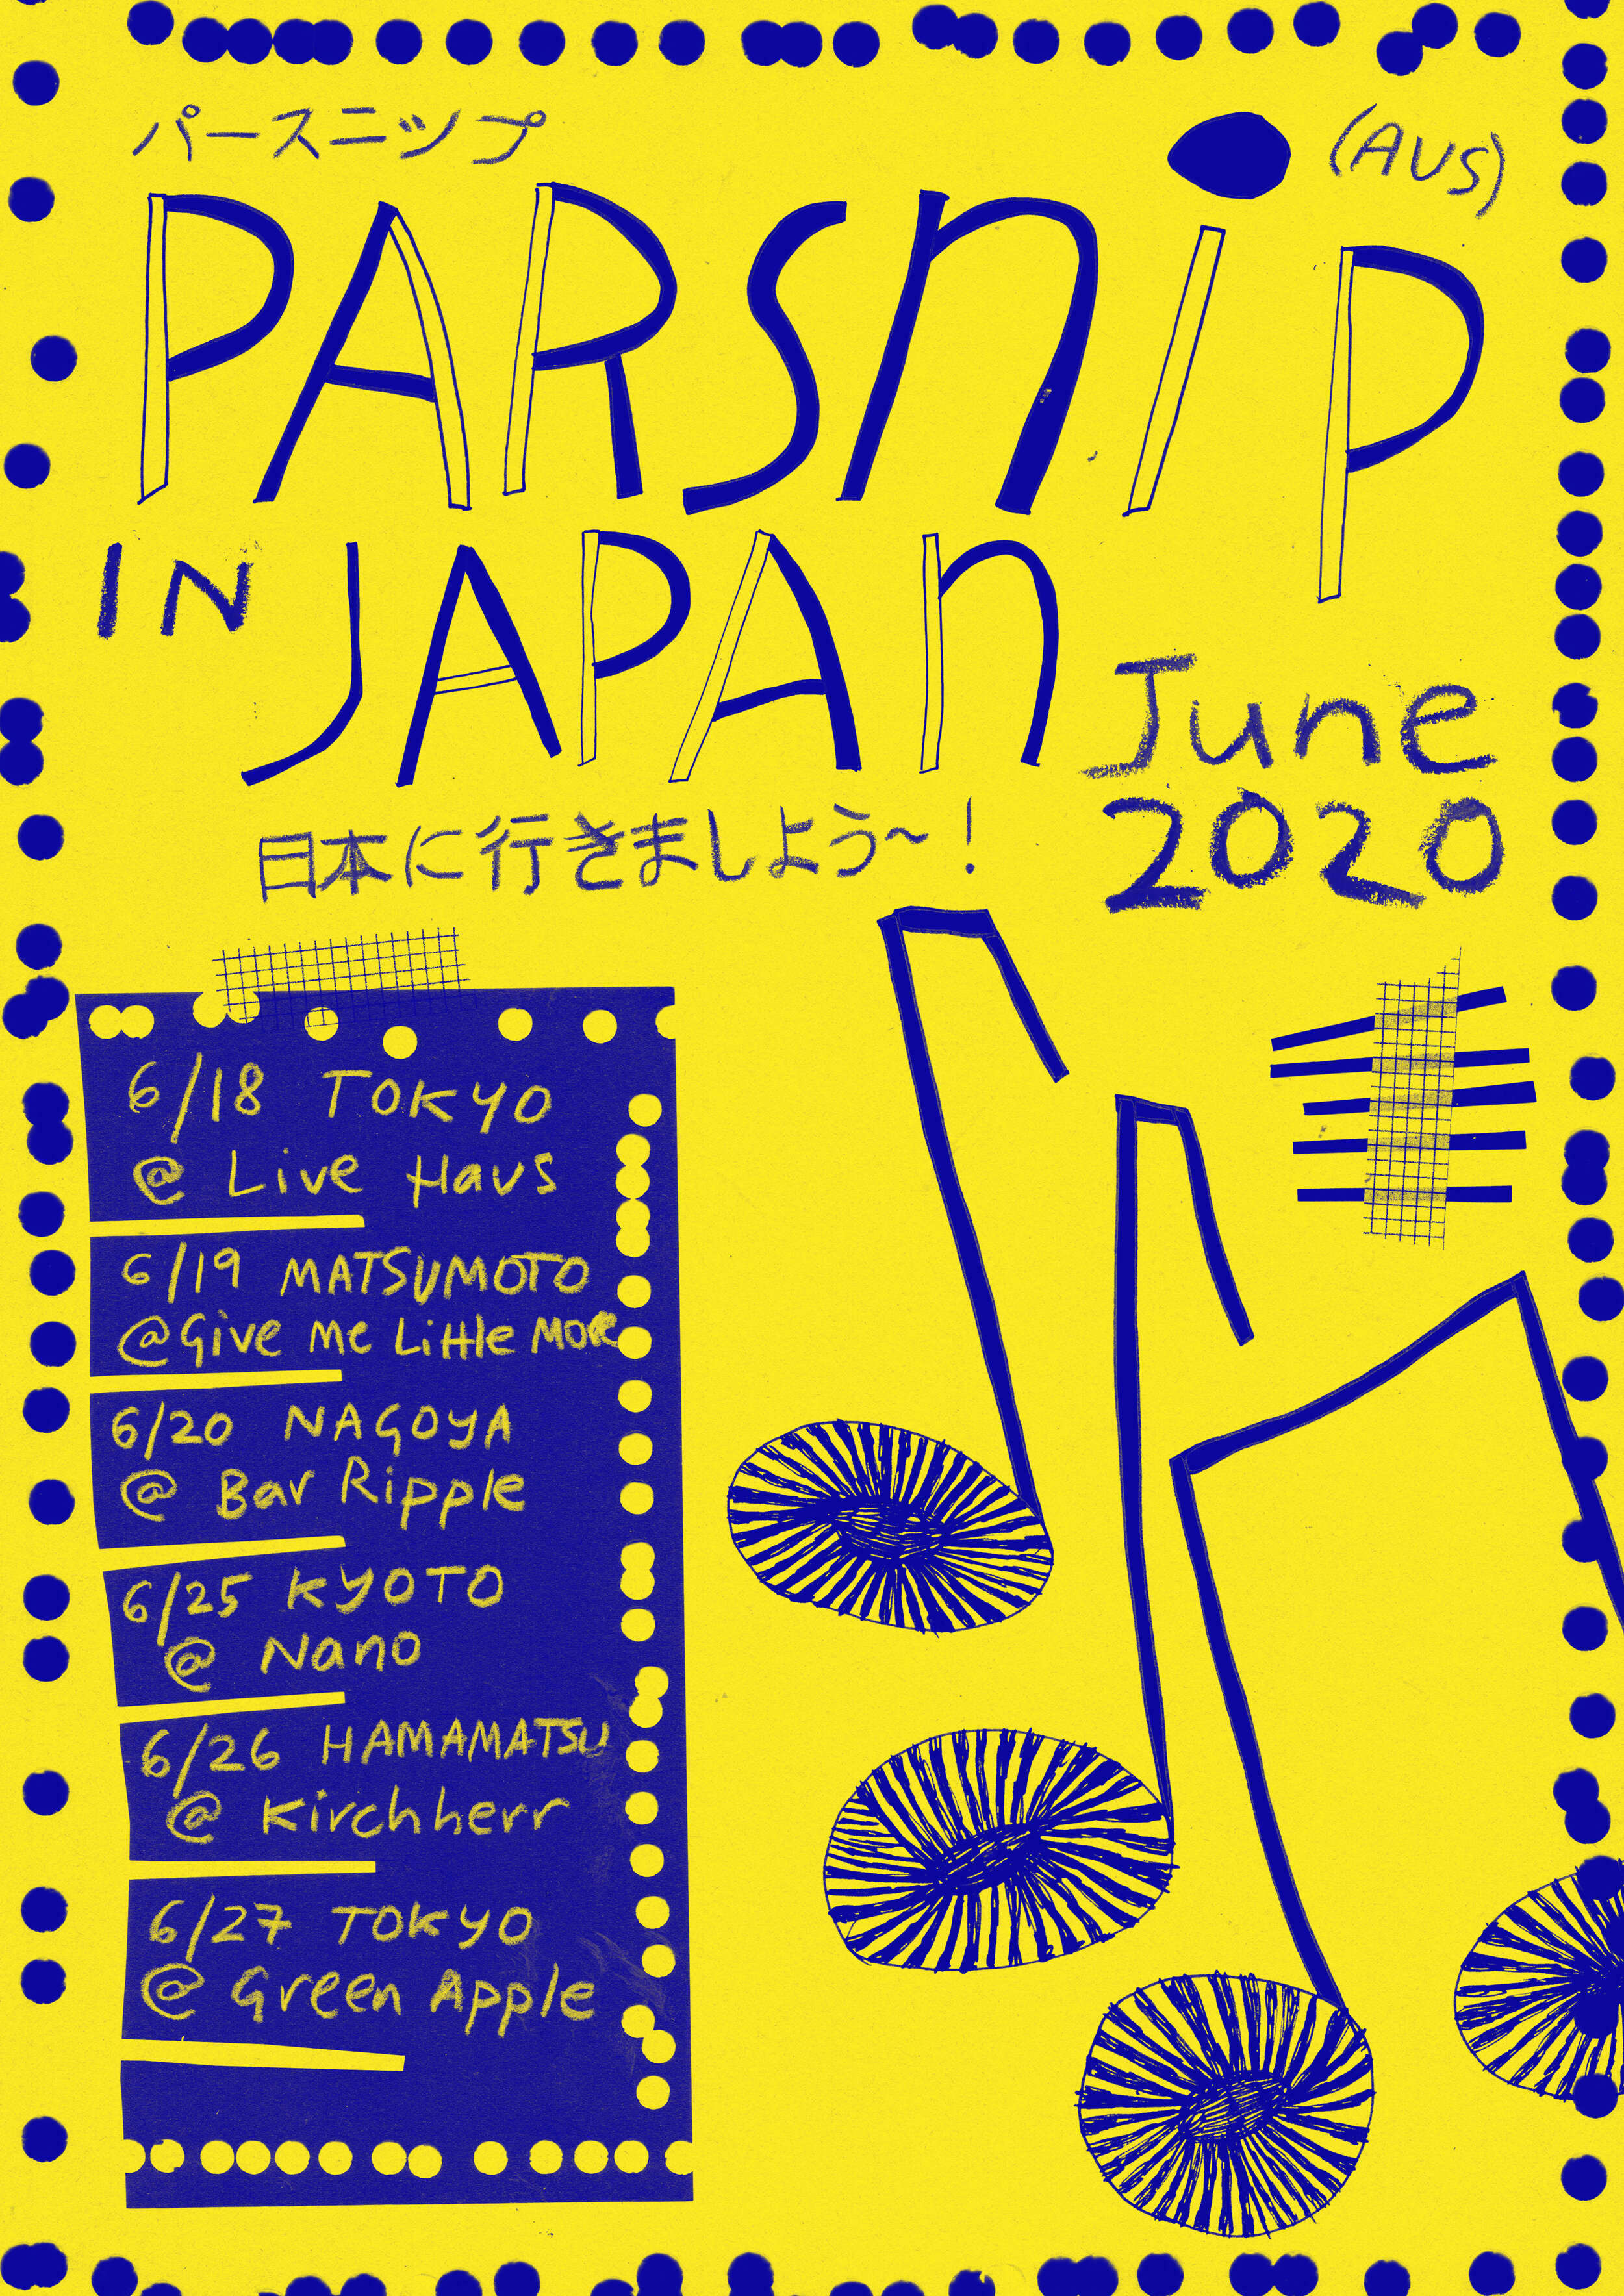 Parsnip Japan tour, 2020